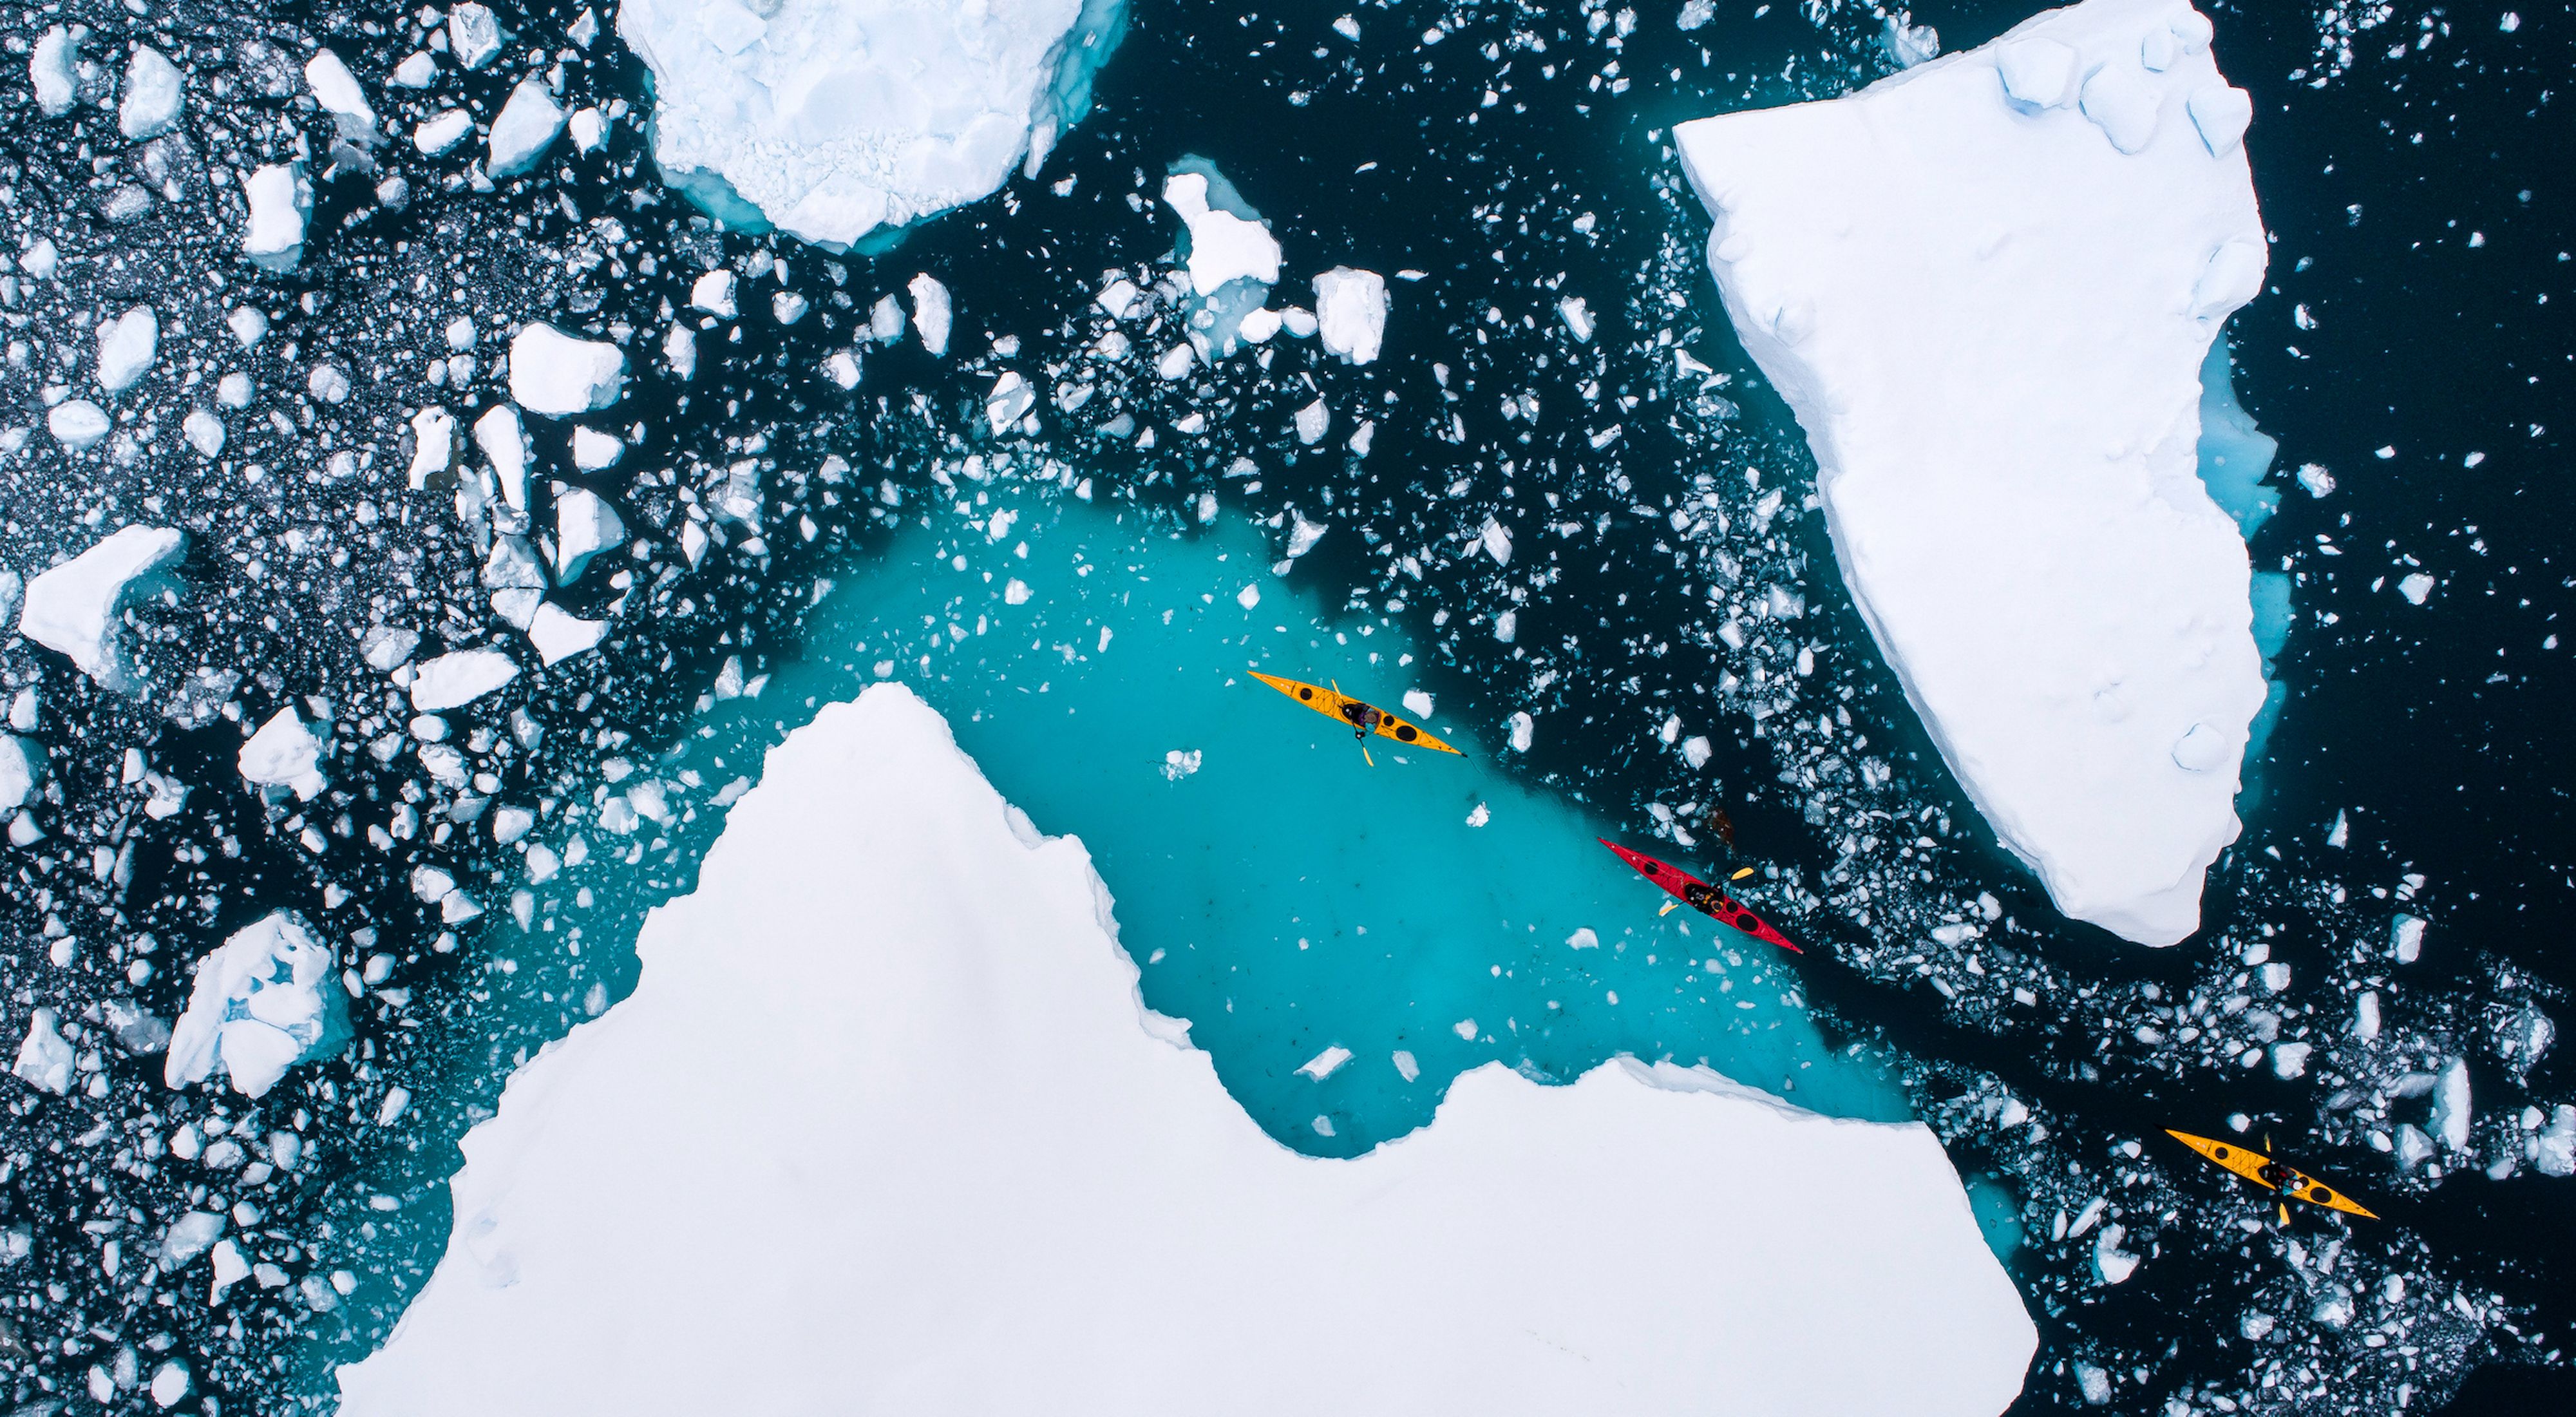 People kayaking through icy water.